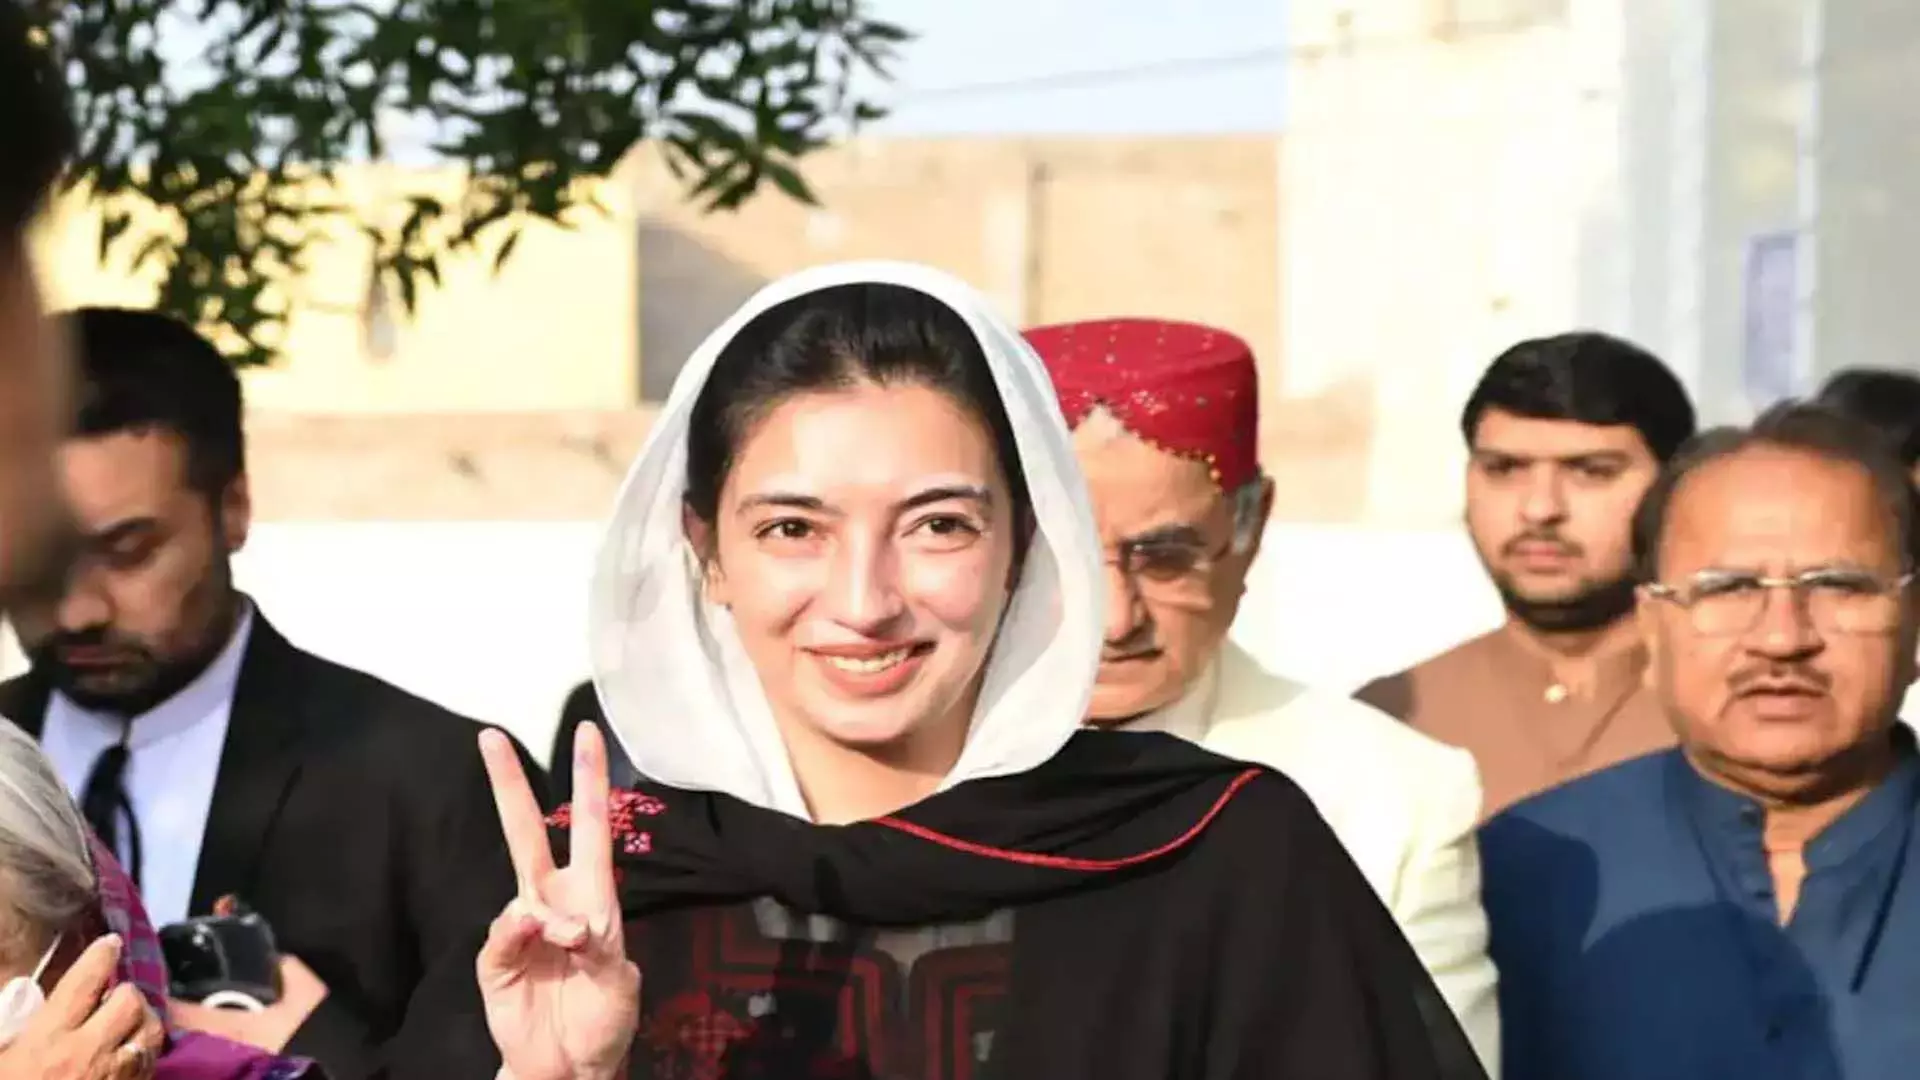 आसिफा भुट्टो जरदारी, पाक राष्ट्रपति की बेटी बनने जा रही: प्रथम महिला